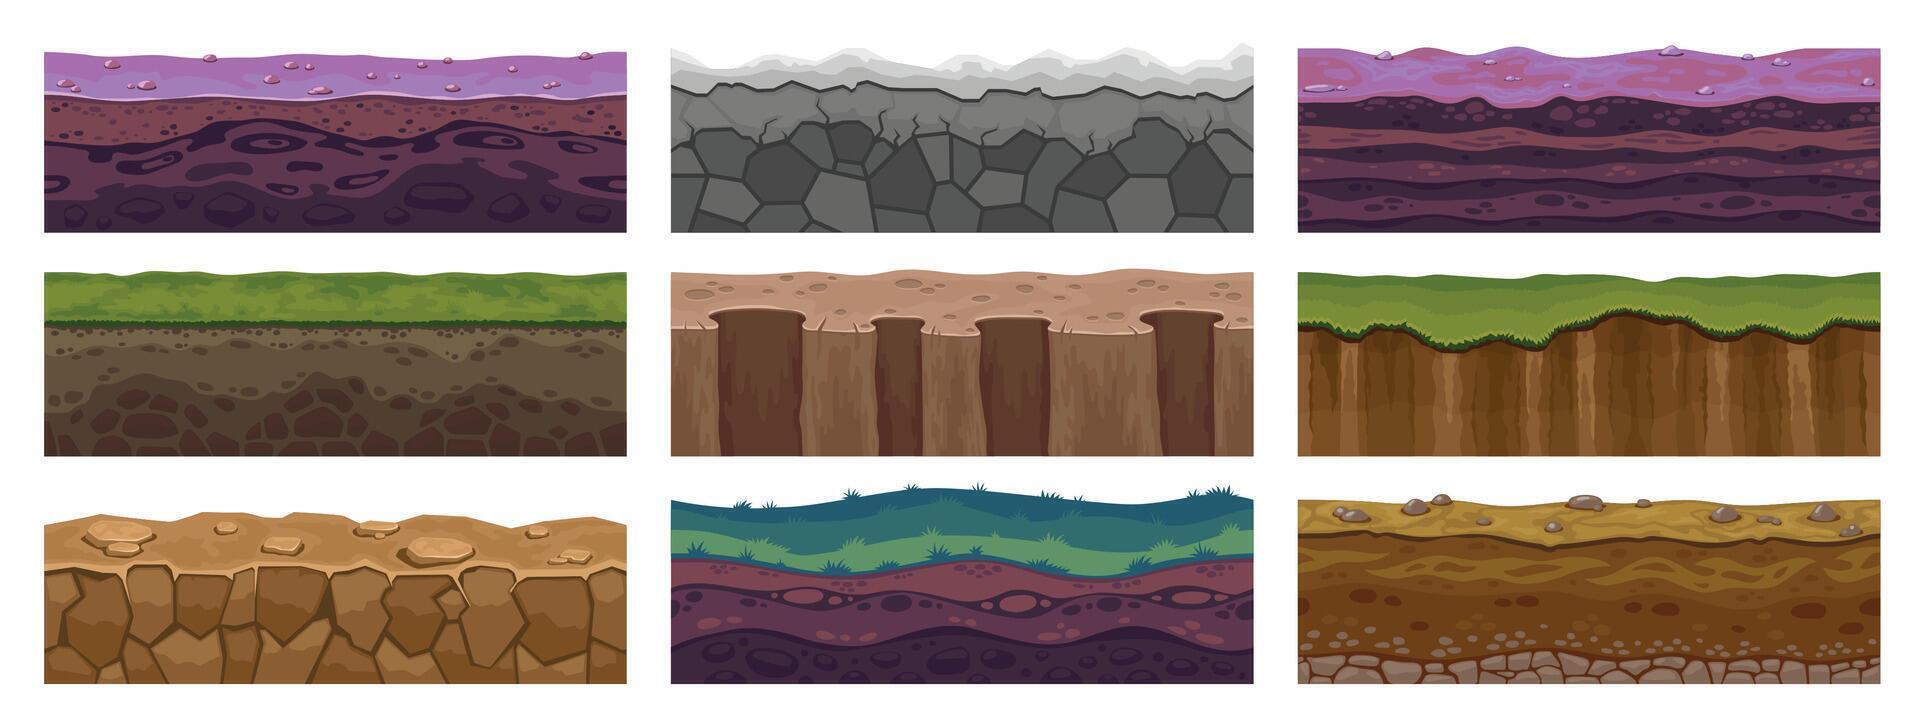 spel jord tillgång. sömlös förgrund golv av stenar stenar smuts och gräs, horisontell mönster för spel nivå av sand öken- och ängar. vektor textur uppsättning